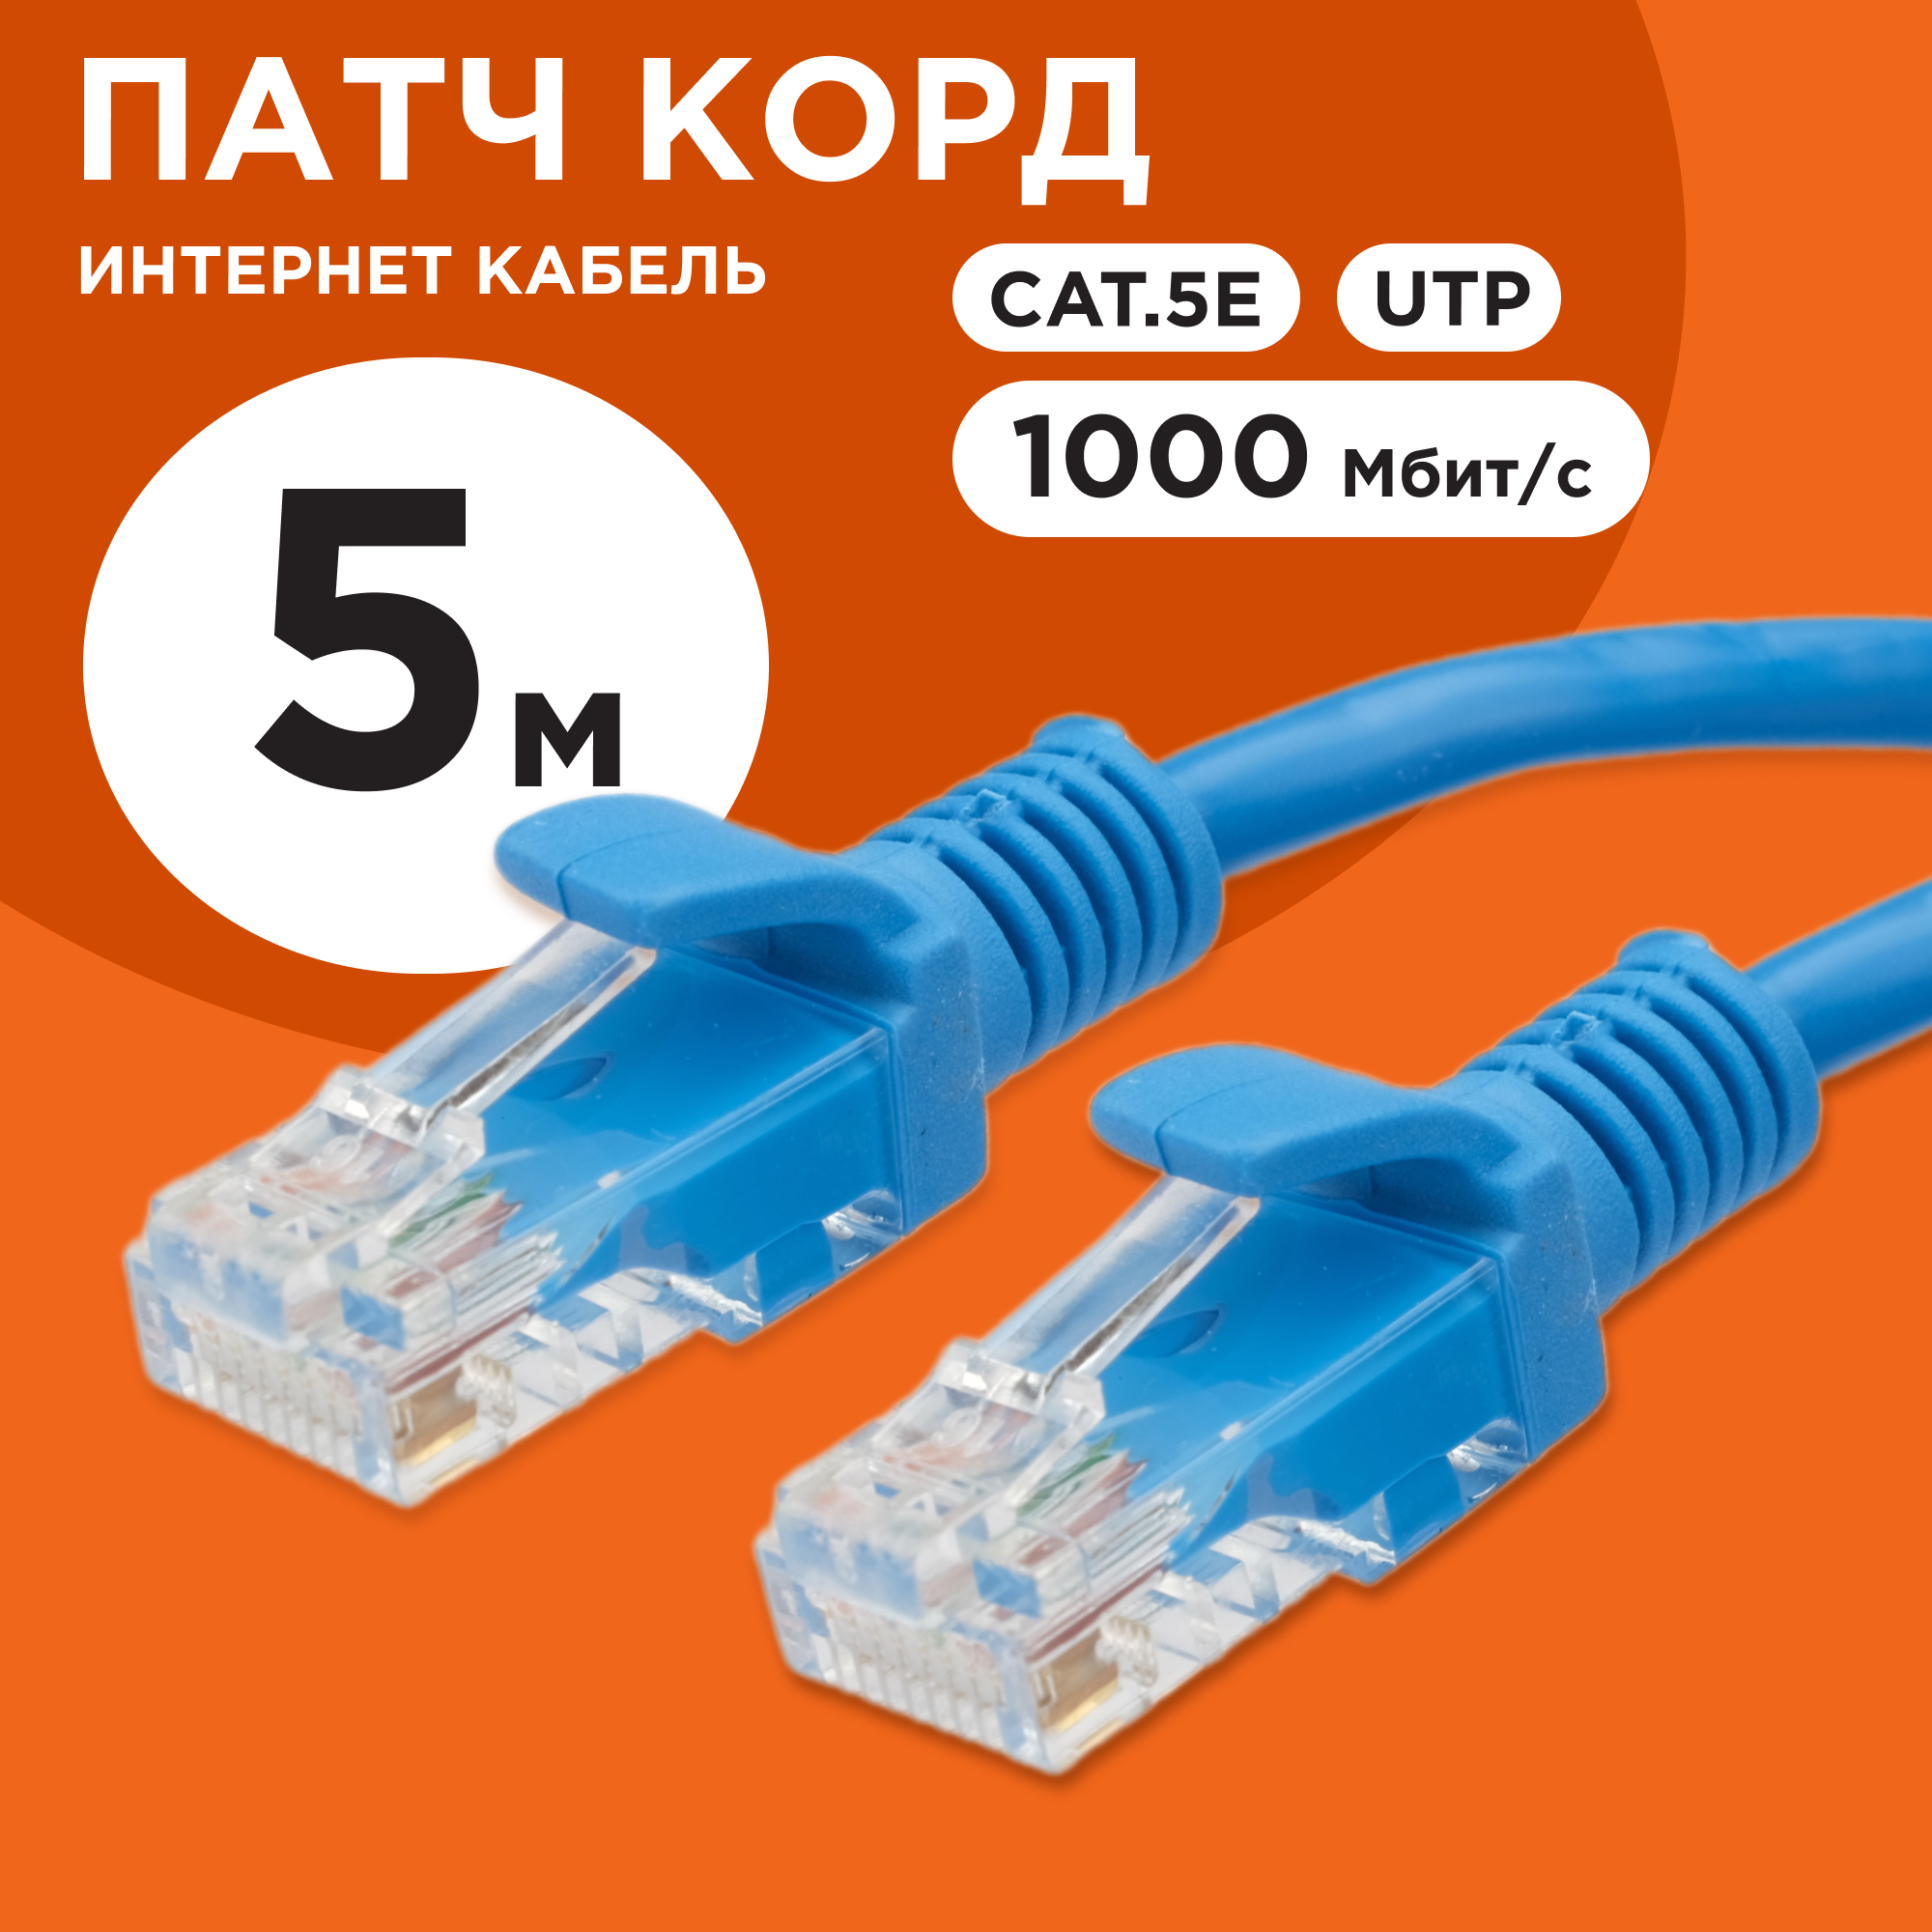 - UTP Cablexpert PP12-5M/B